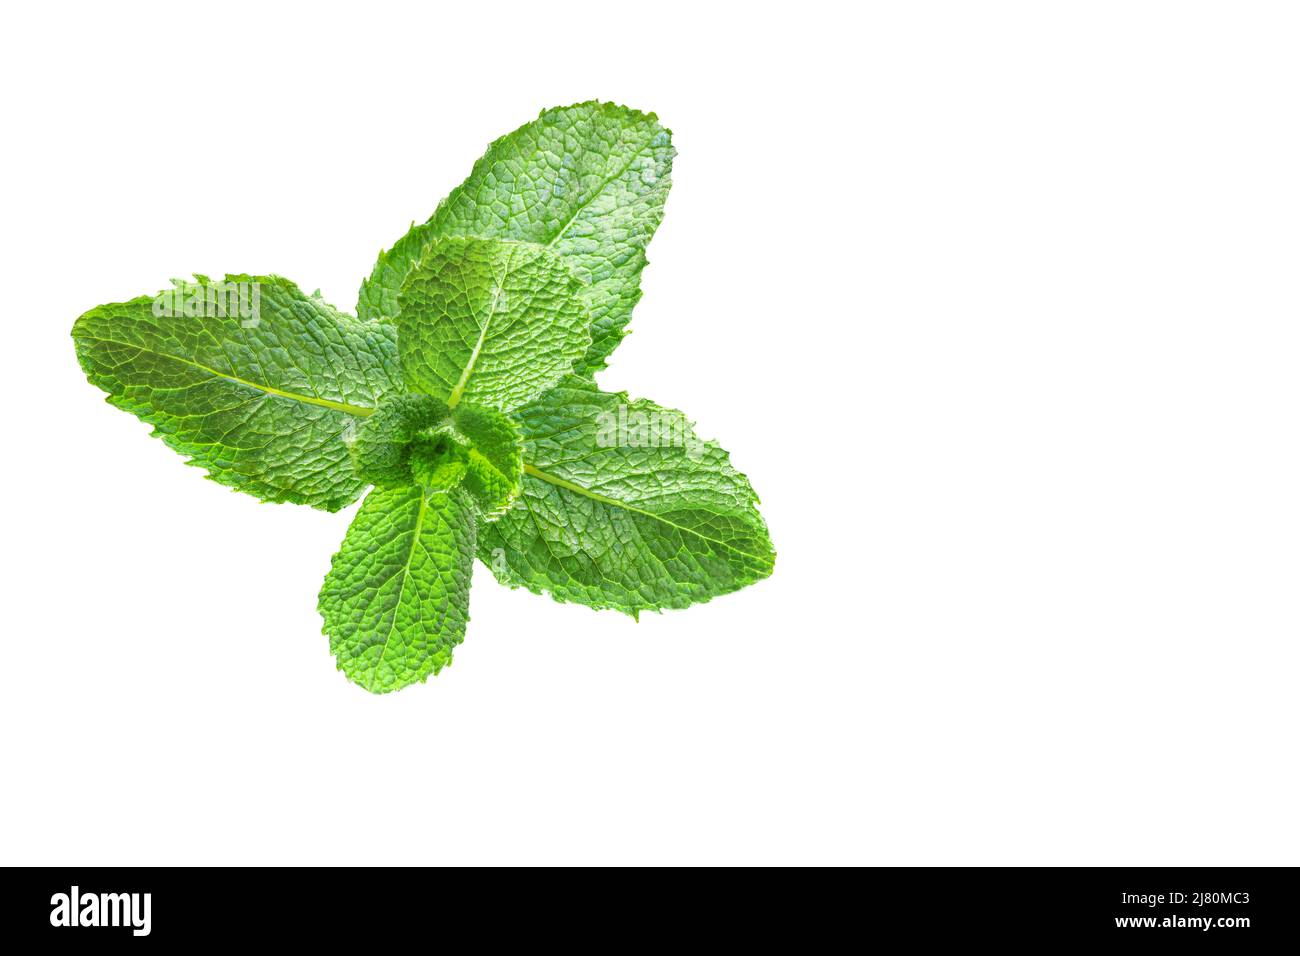 Mentha spicata auch als Spearmint, Garten, gemeine oder Lamm Minze und Makrele Minze bekannt, ist eine Art von Minze, . Isoliert auf weißem Hintergrund mit Leerzeichen Stockfoto